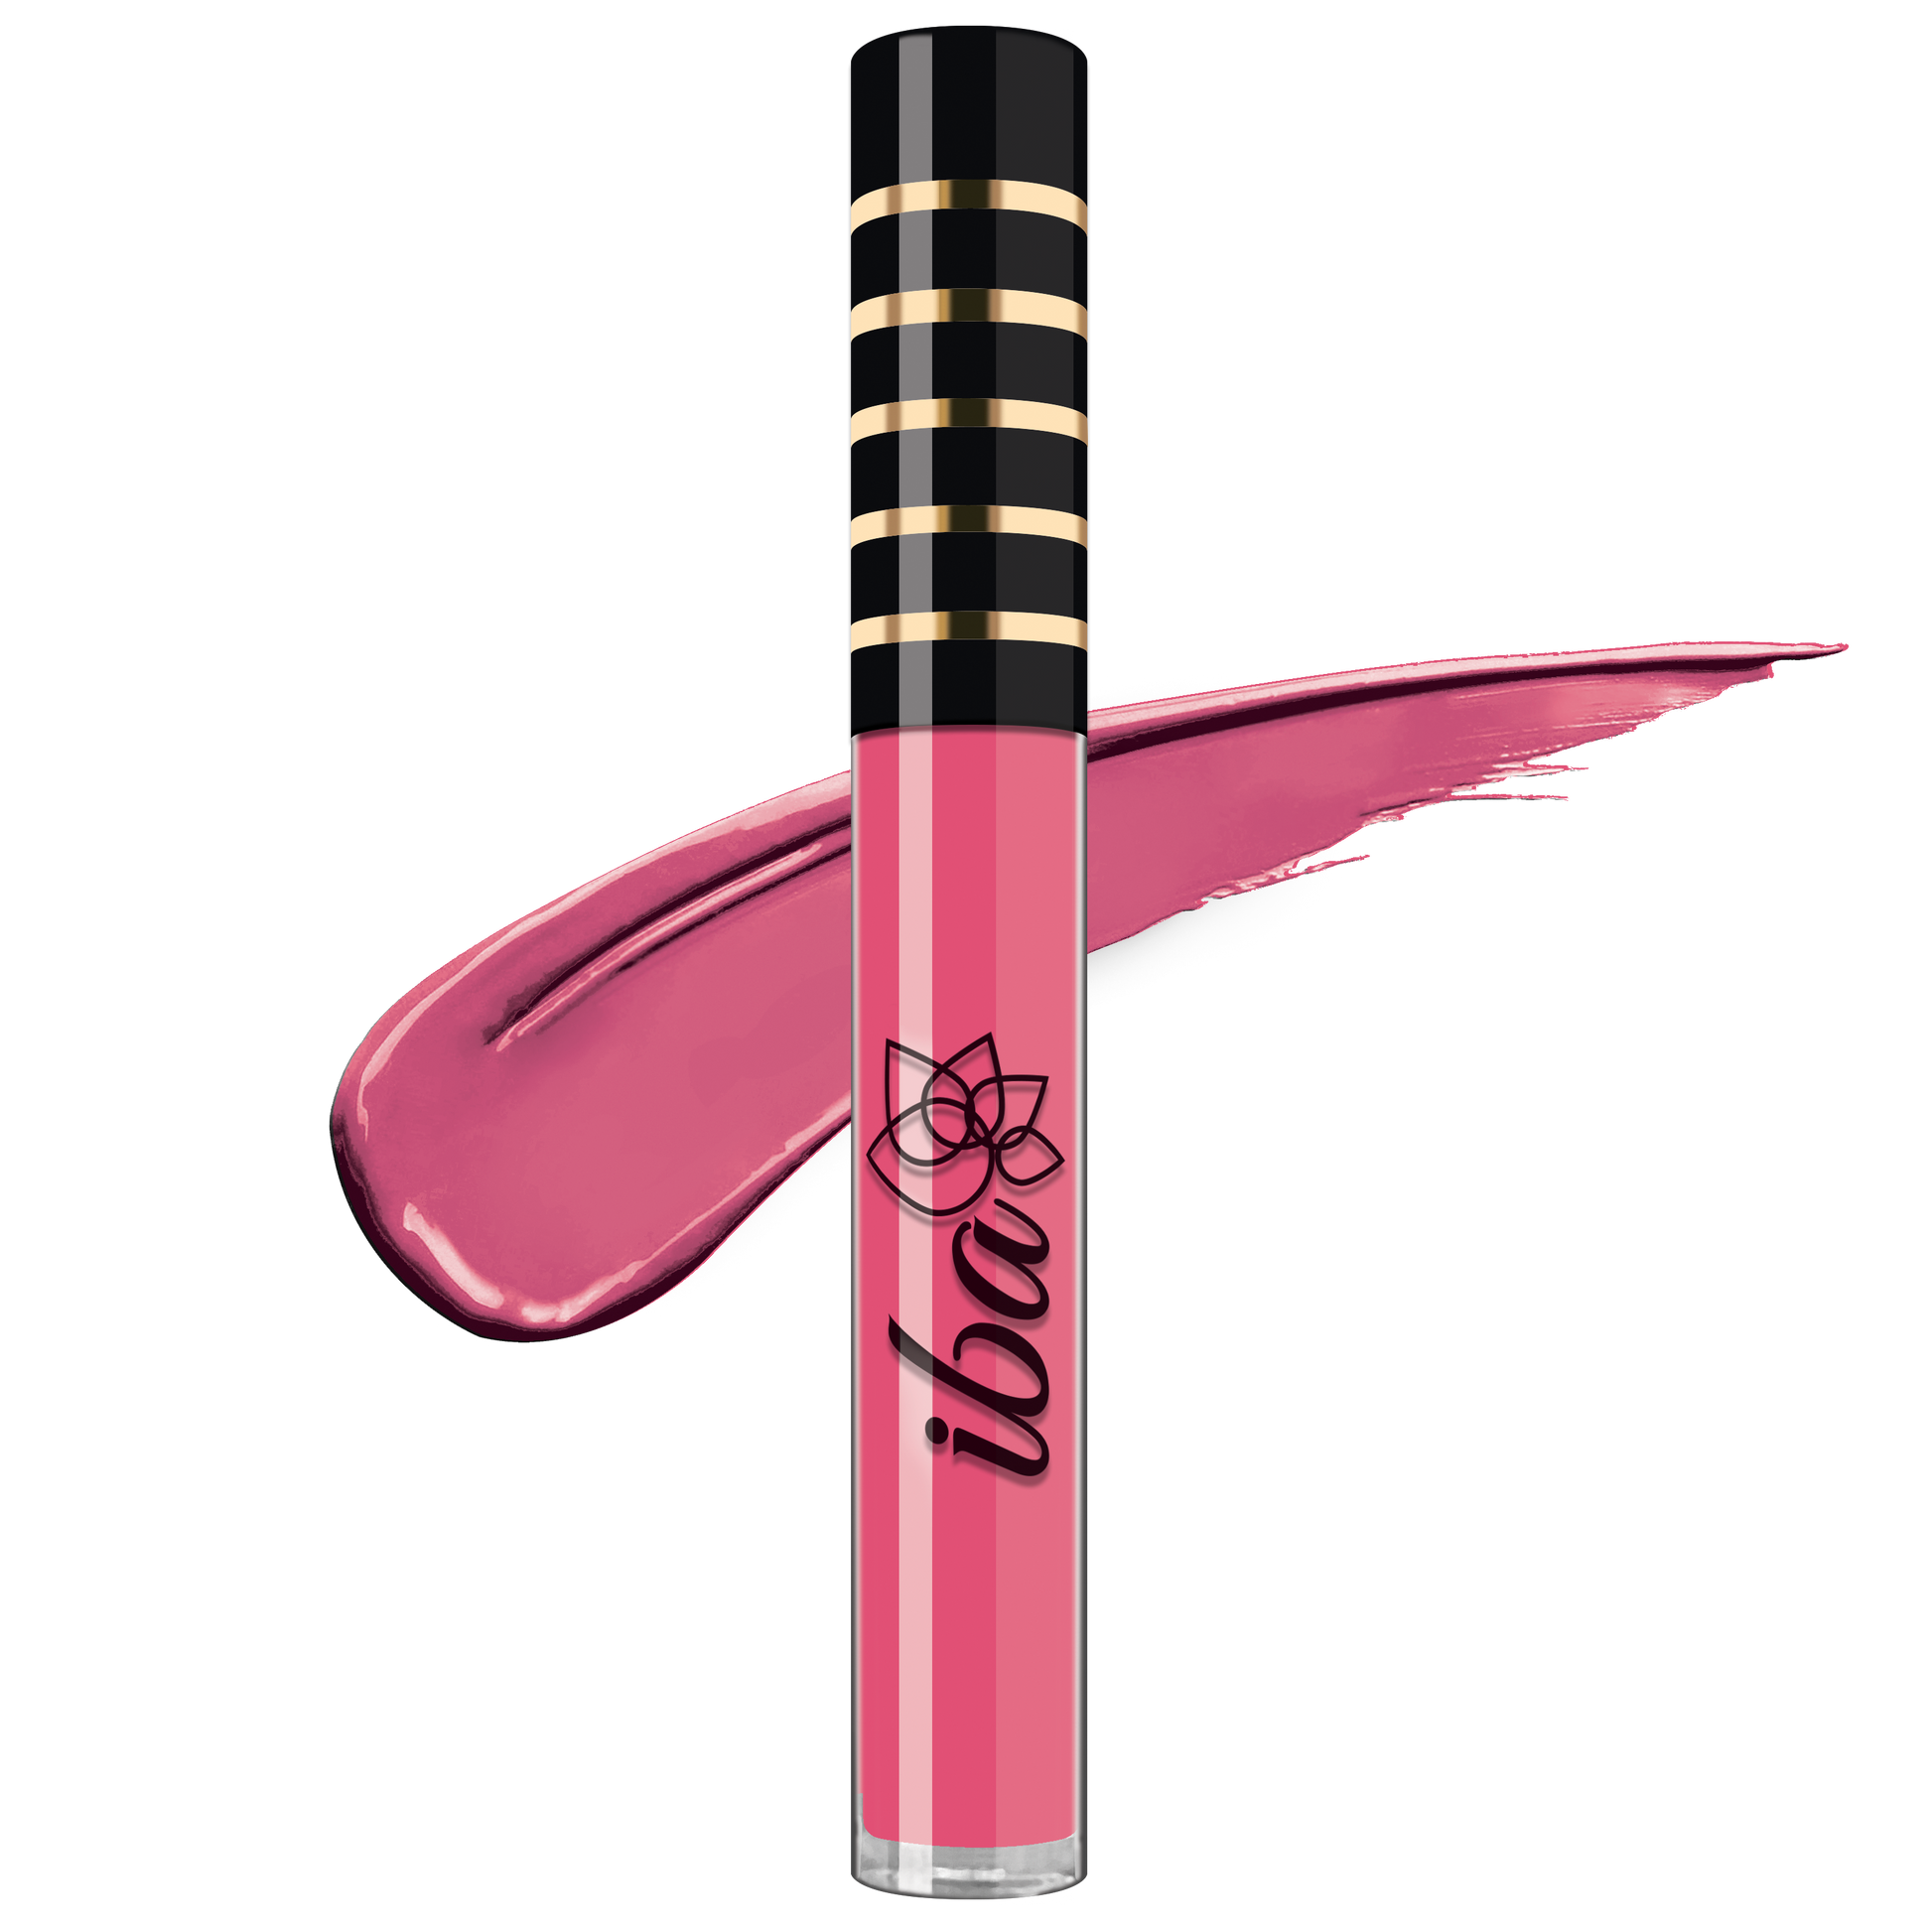 Iba Maxx Matte Liquid Lipstick Color Dreamy Pink